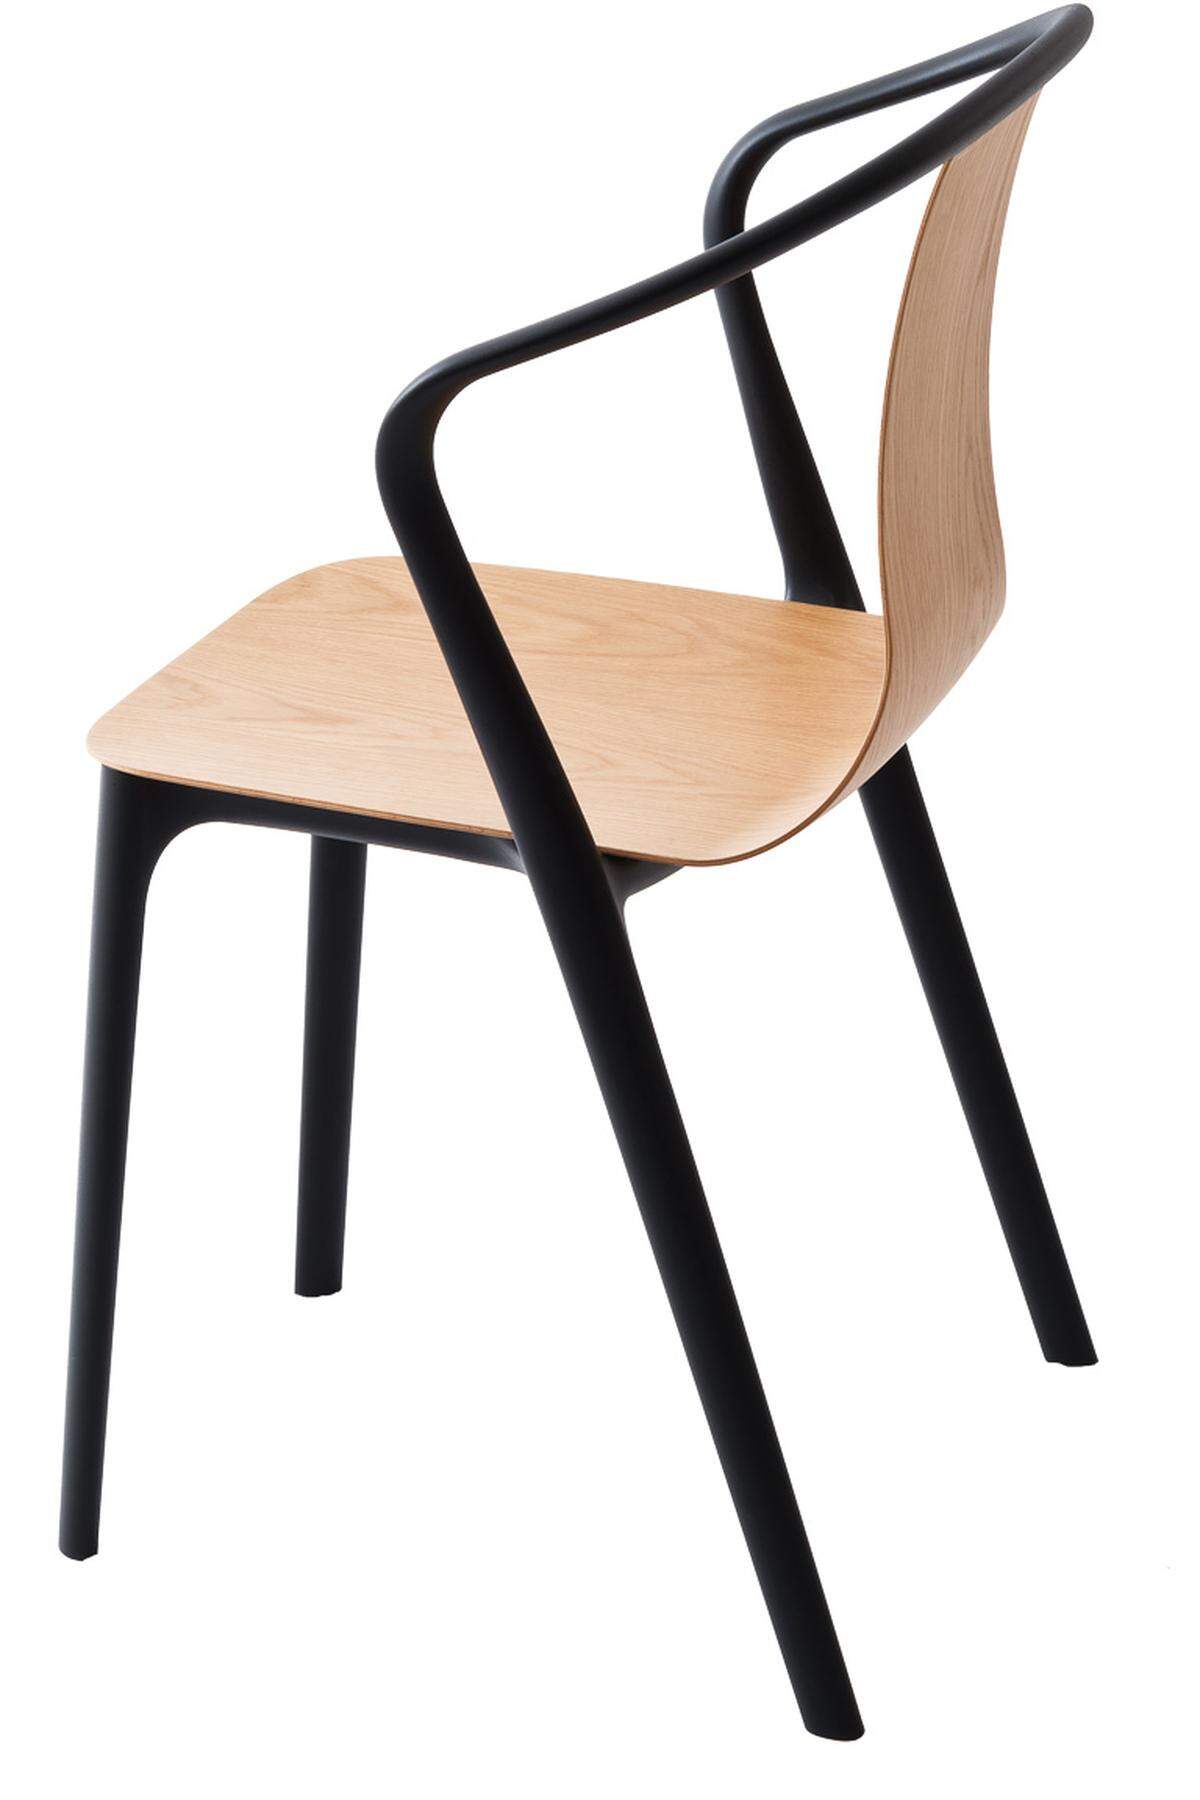 Ein Stuhl wie Paris: „Belleville“ von den Brüdern Bouroullec für Vitra gestaltet. Ein Rahmen, eine Sitzschale. Mehr nicht.